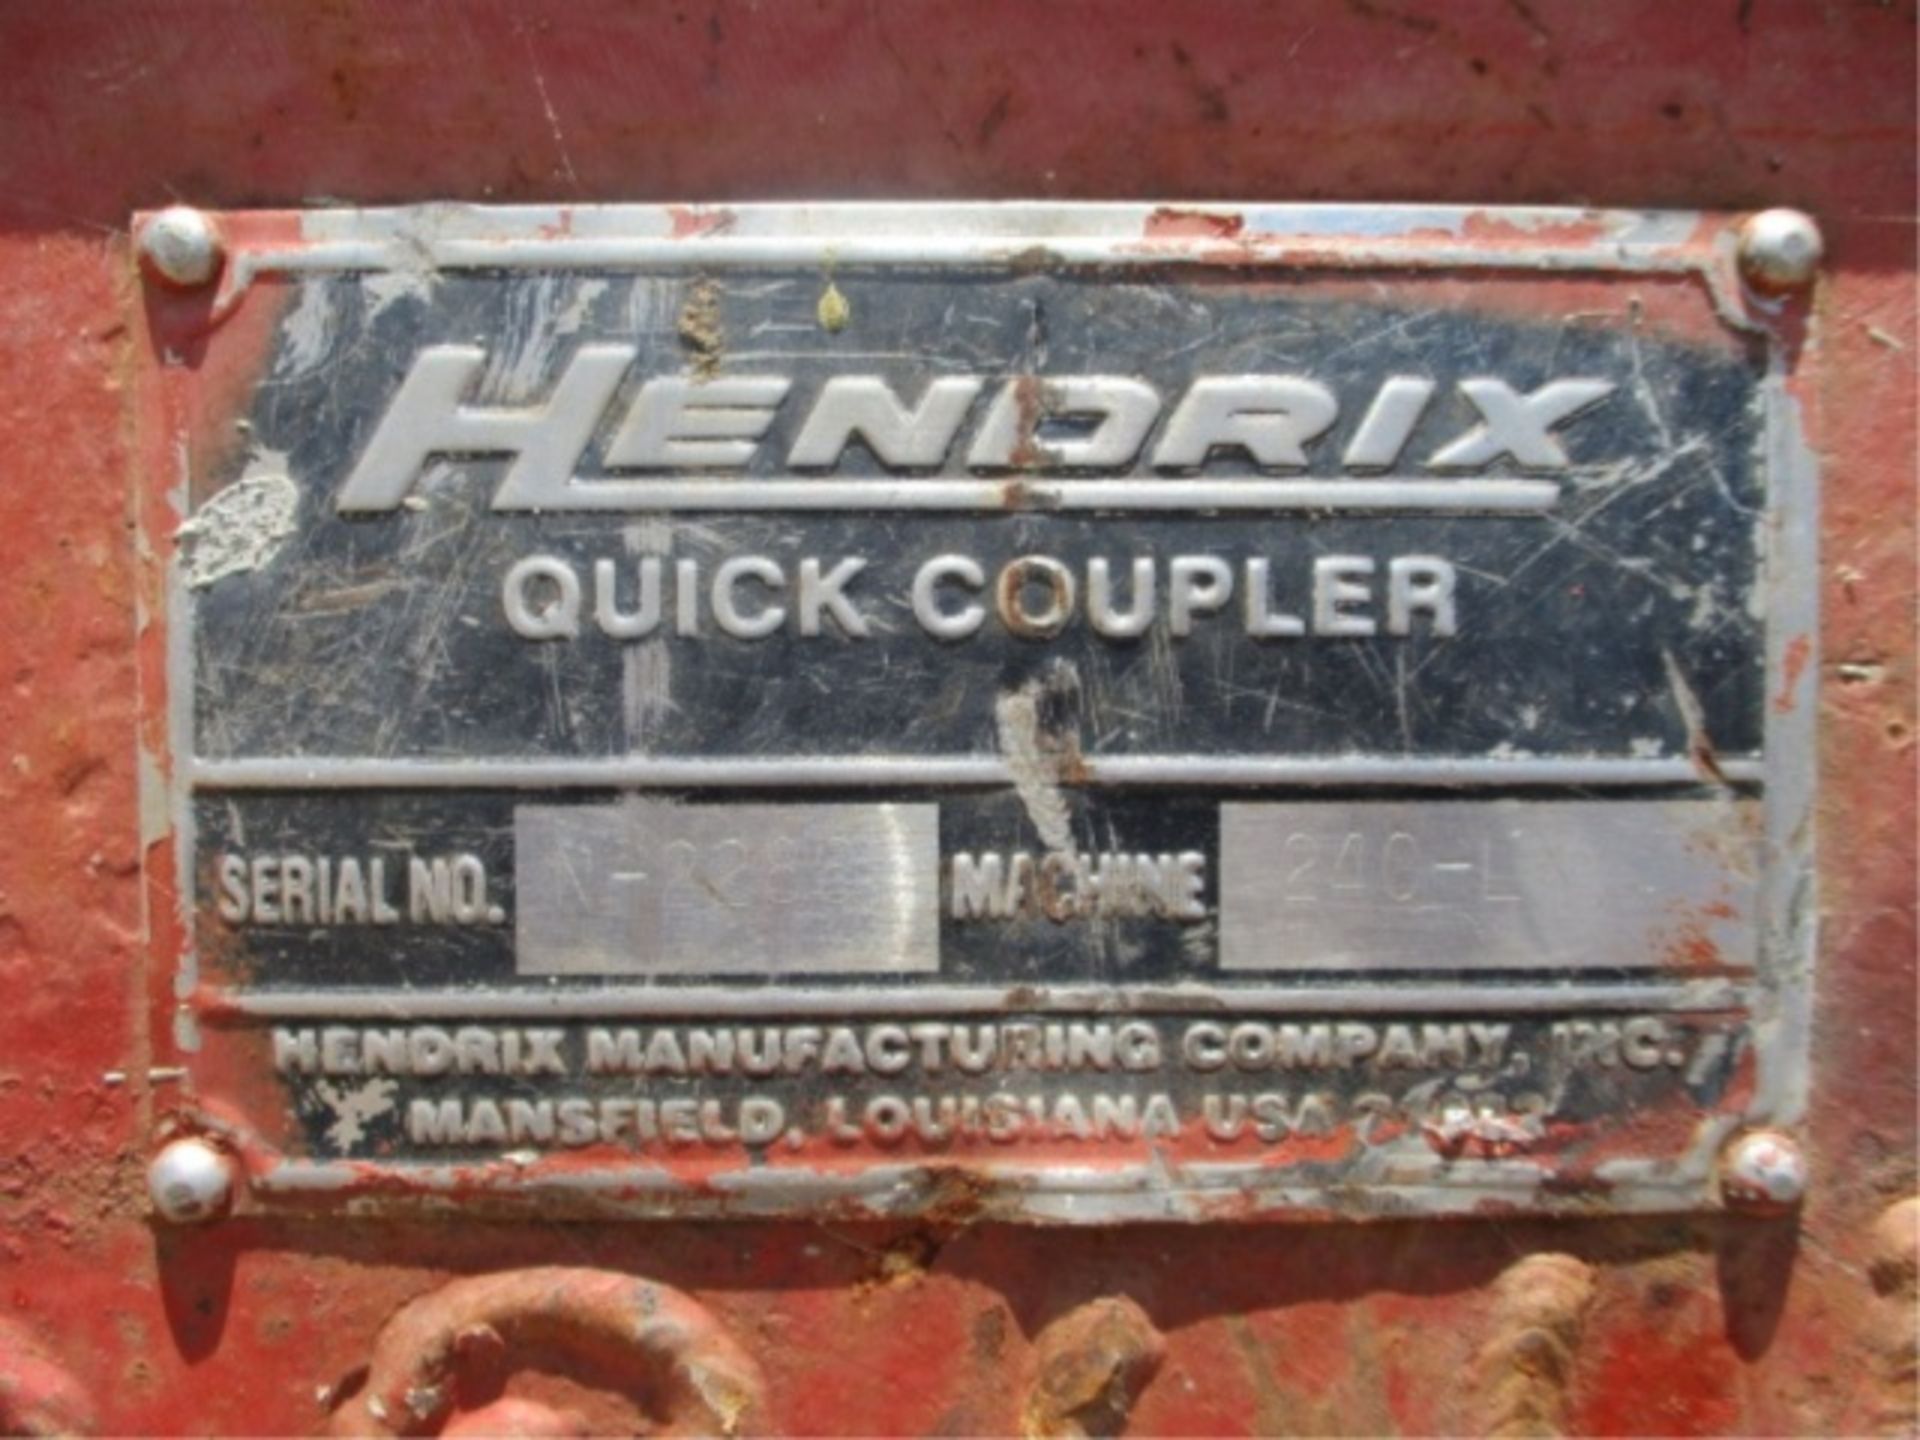 2005 Linkbelt 240 LX Hydraulic Excavator, Isuzu 6-Cyl Diesel, Hendrix Q/C, Cab W/AC, 24" Tooth - Image 29 of 39